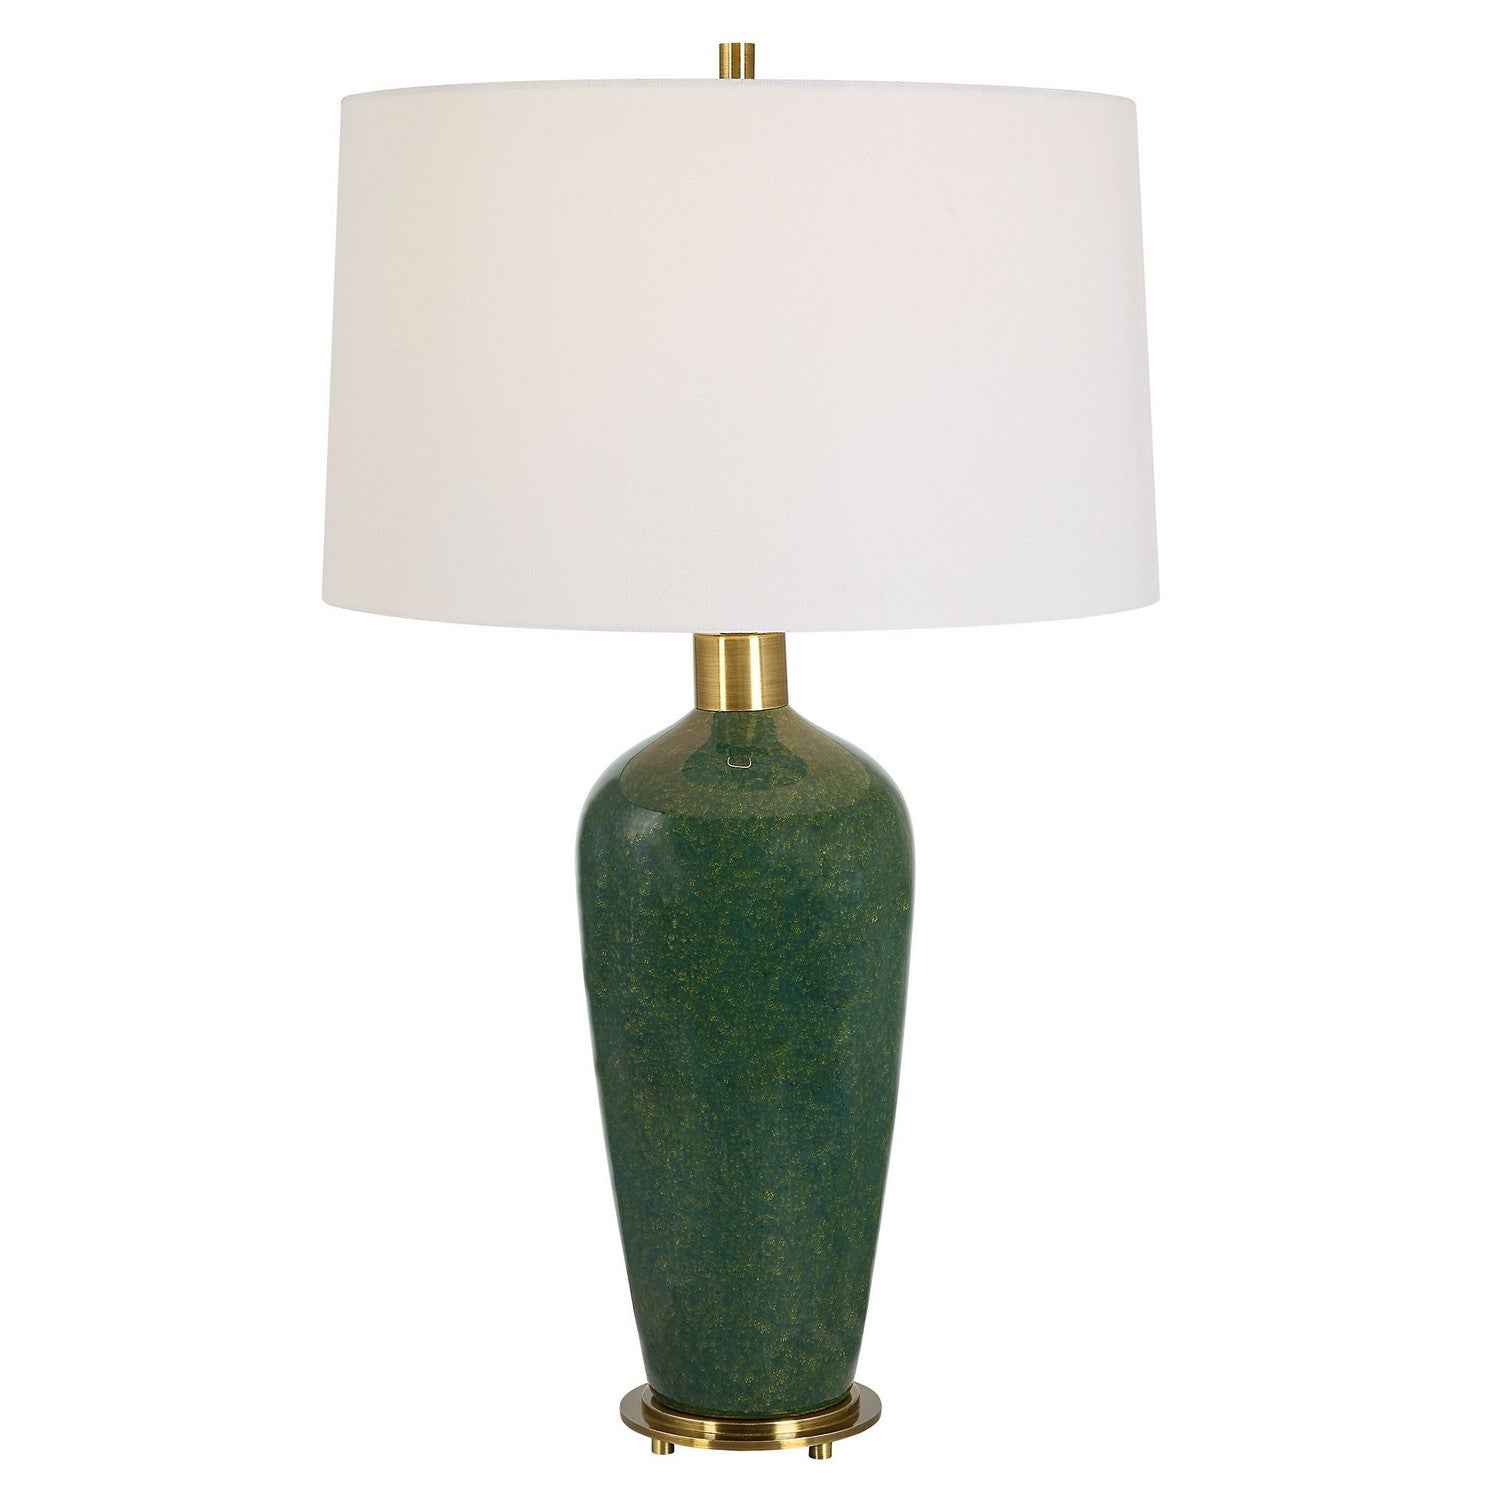 Uttermost - 30226 - One Light Table Lamp - Verdell - Antiqued Brass